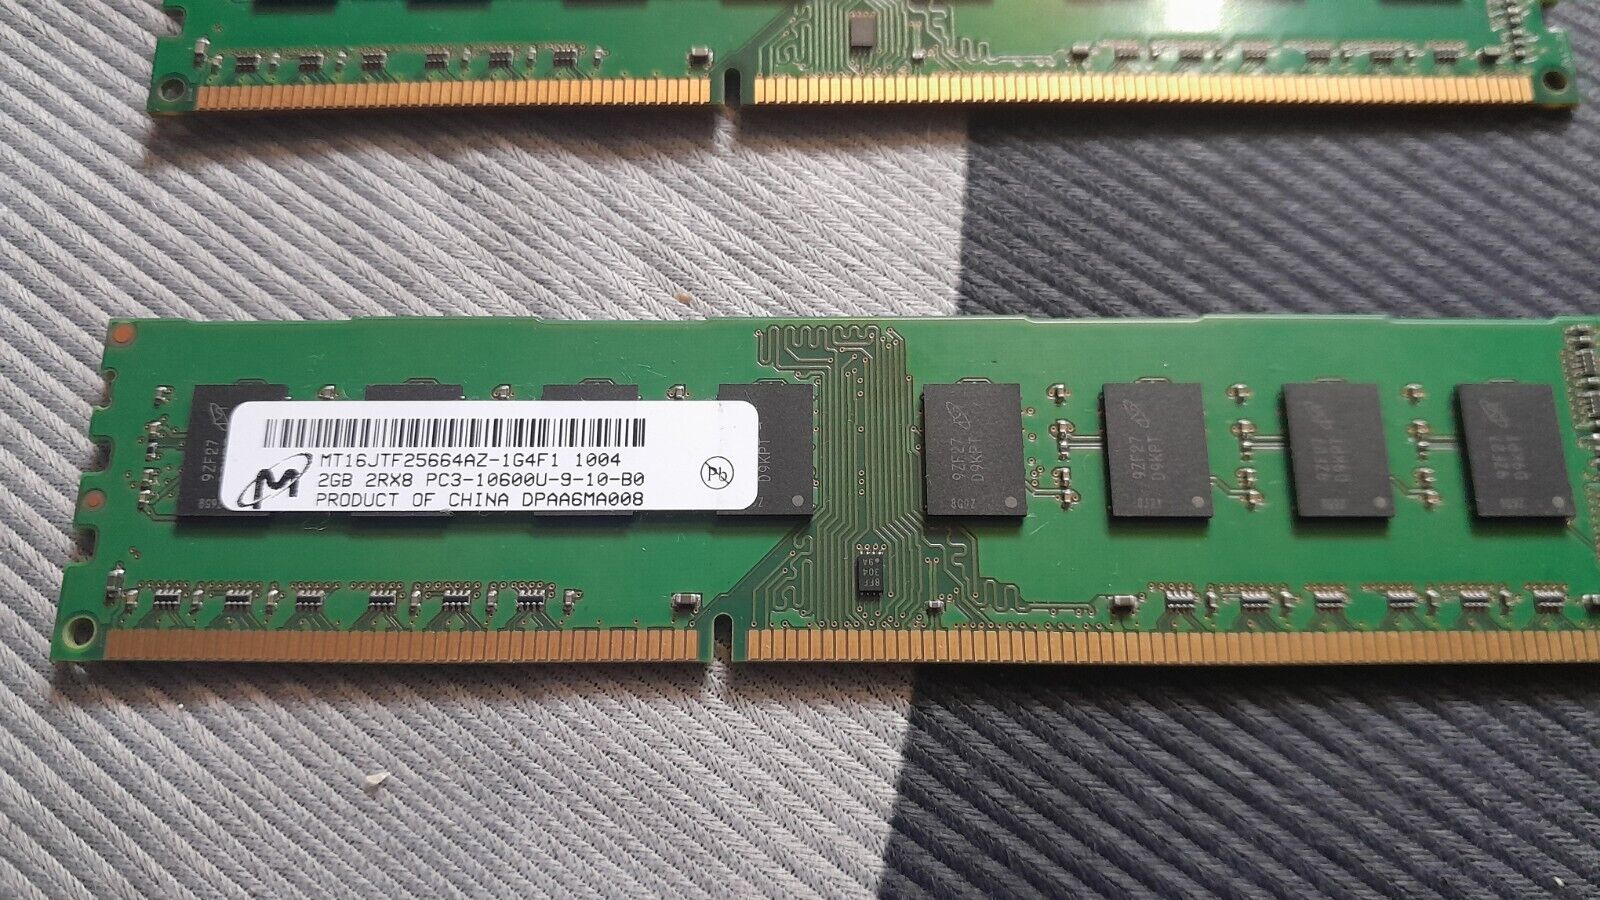 Micron 2GB DDR3 2GB 2RX8 PC3-10600U-9-10-B0 2-Pack